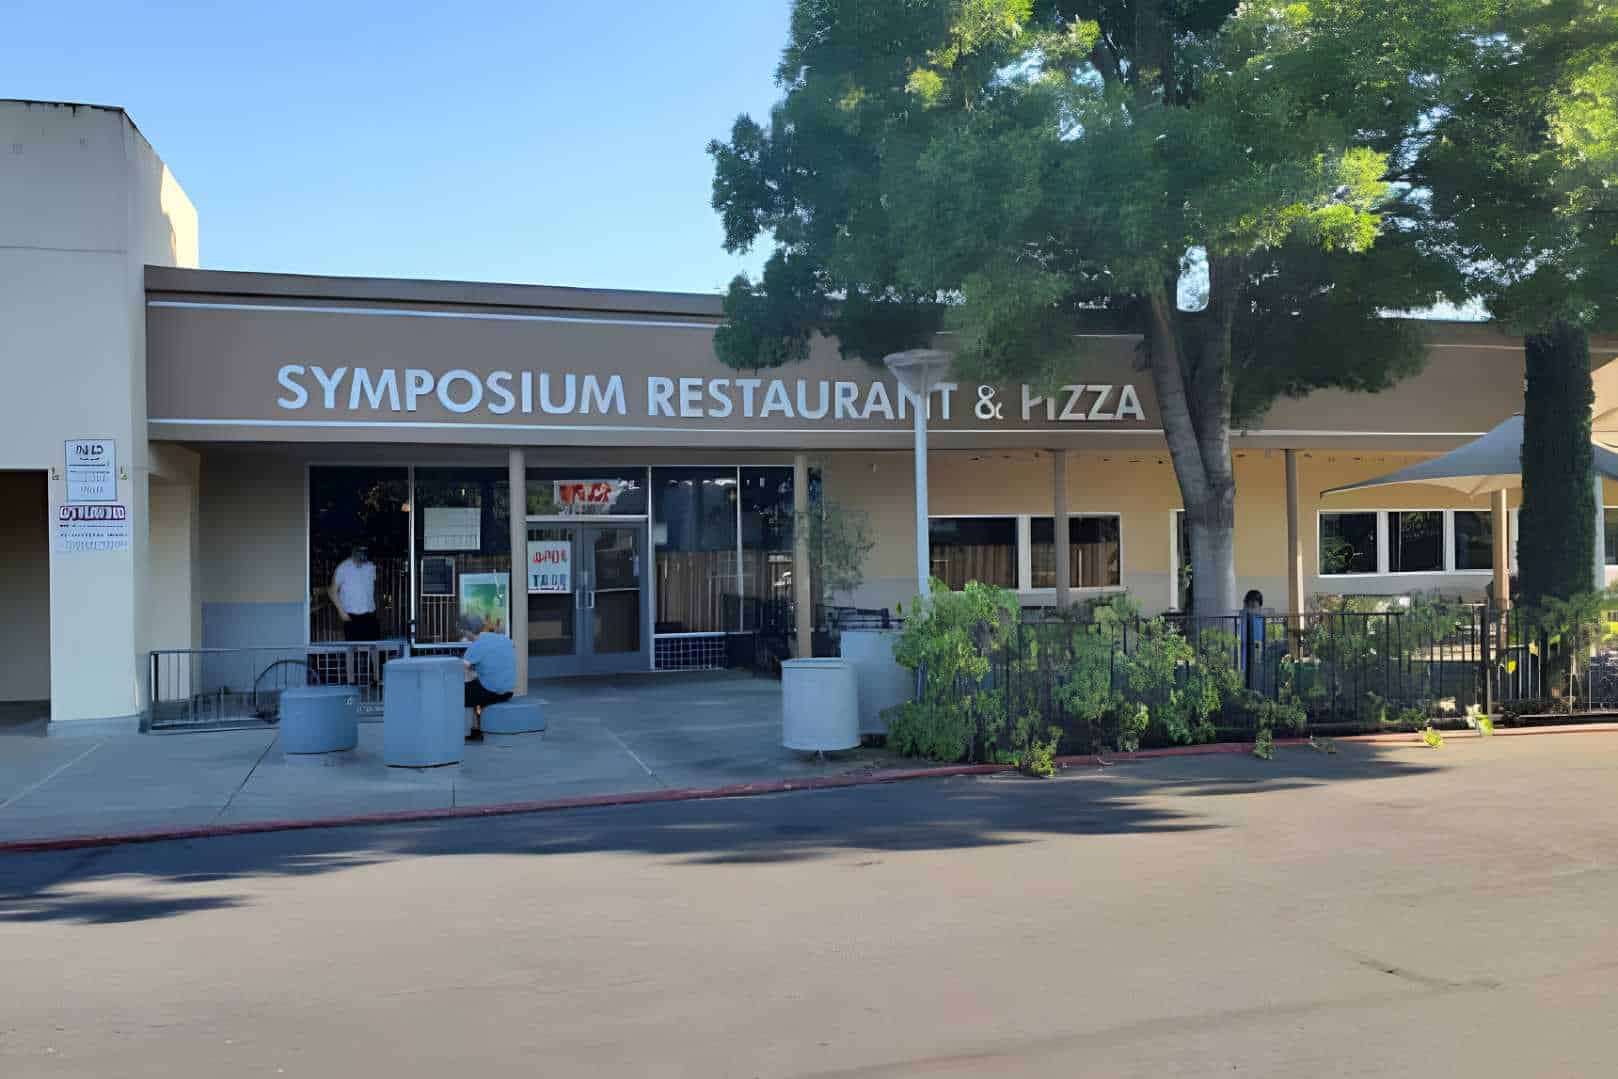 Symposium Restaurant & Pizza Best Restaurants in Davis, CA